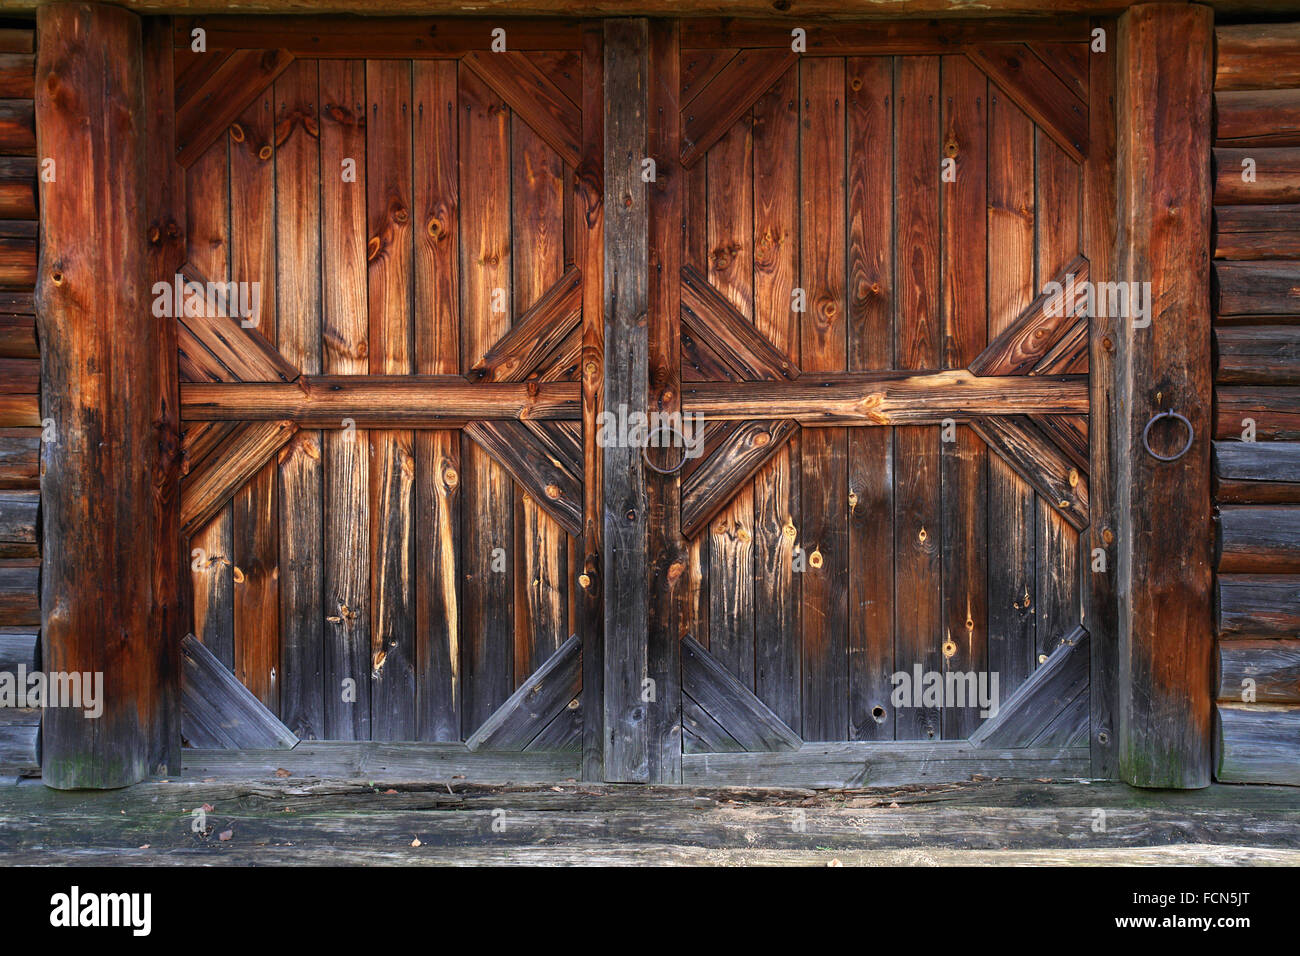 Fienile porta del XIX secolo. Interessante artigianato del legno russo master. Museo di artigianato in legno a Suzdal'. Foto Stock